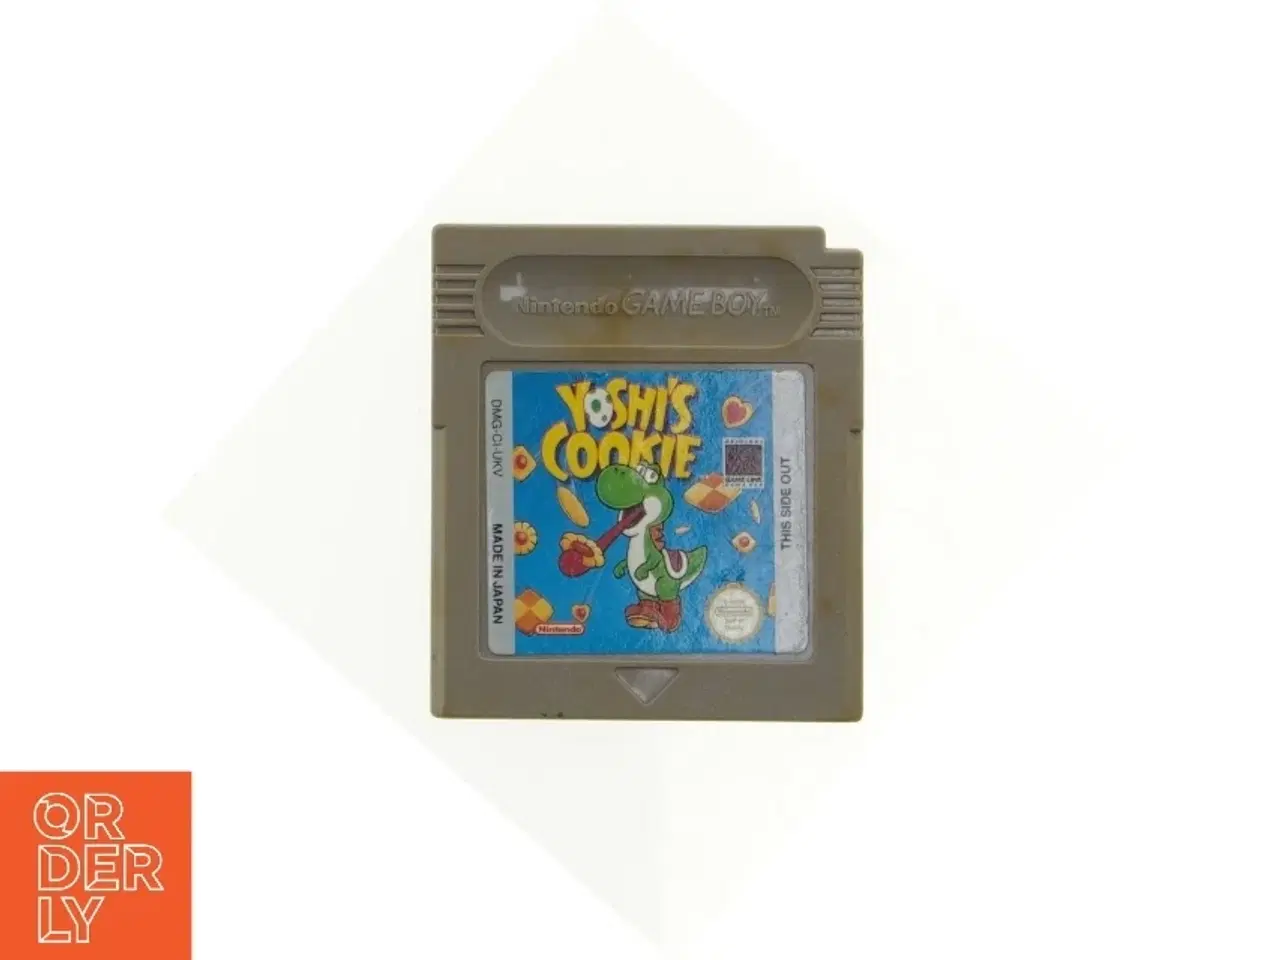 Billede 1 - Yoshi's Cookie Game Boy spil fra Nintendo